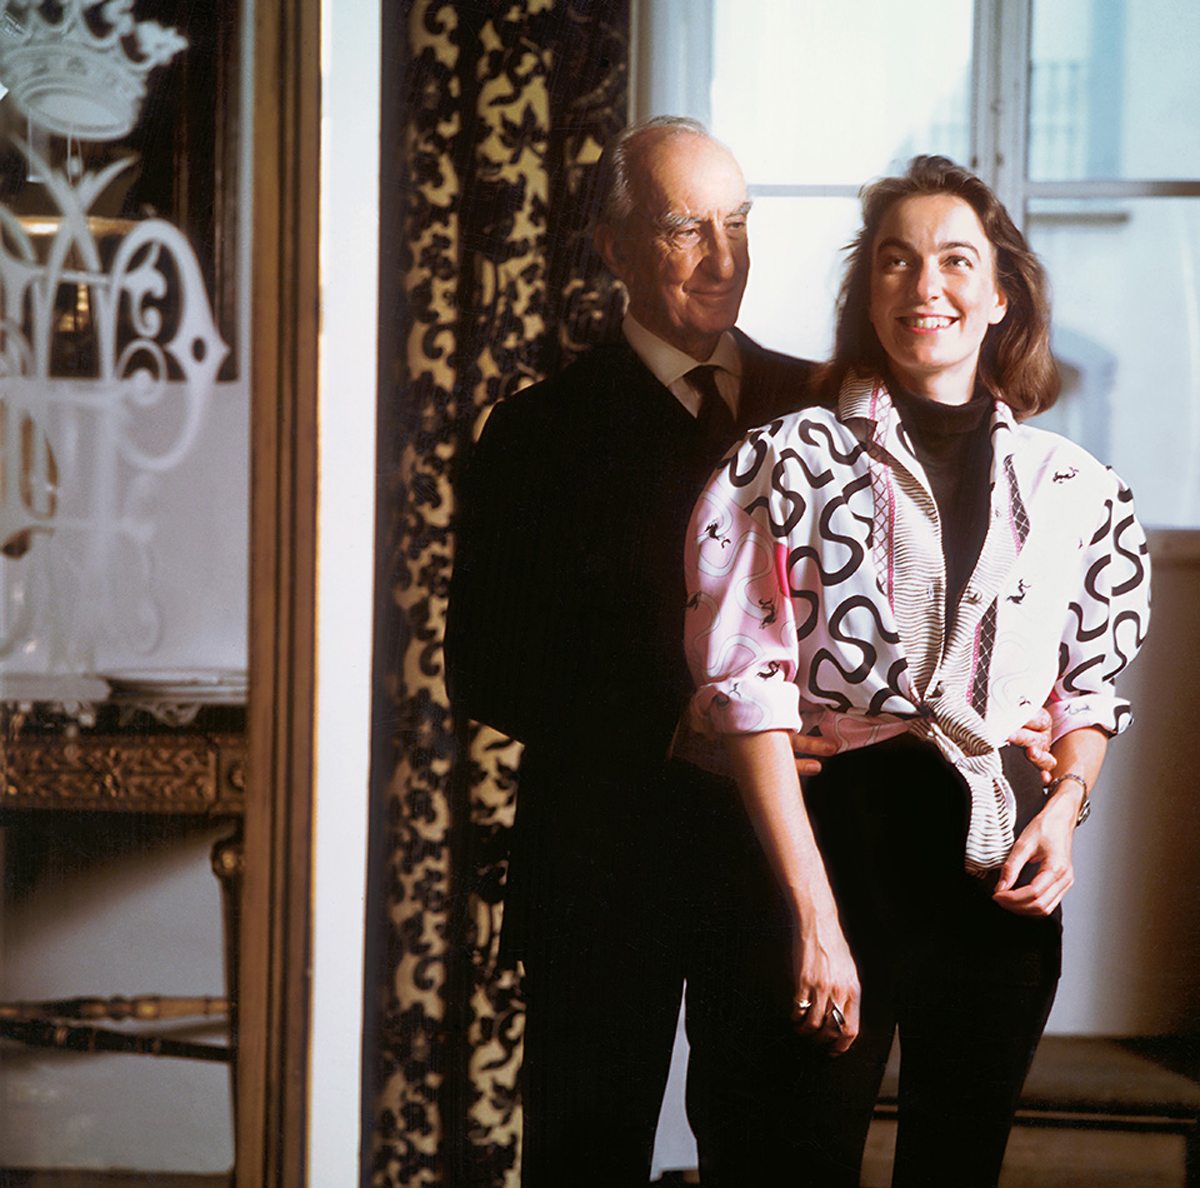 Marquis Emilio Pucci and Laudomia in Palazzo Pucci, Florence, 1986. Photo © Emilio Pucci Archive, Florence.